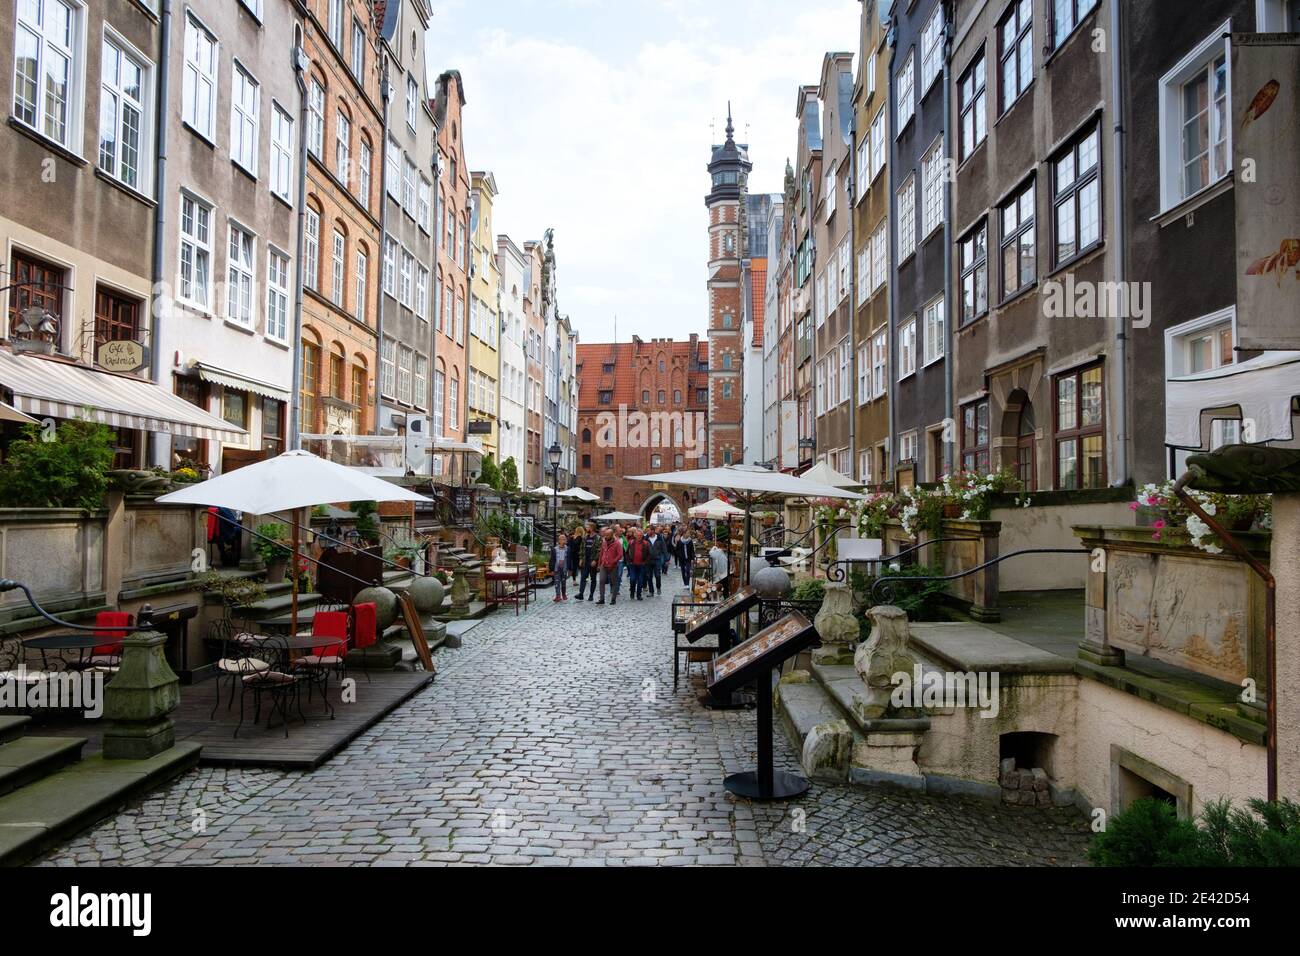 GDANSK, POLAND - SEPTEMBER 09, 2017: Streets in historical center of Gdansk Stock Photo